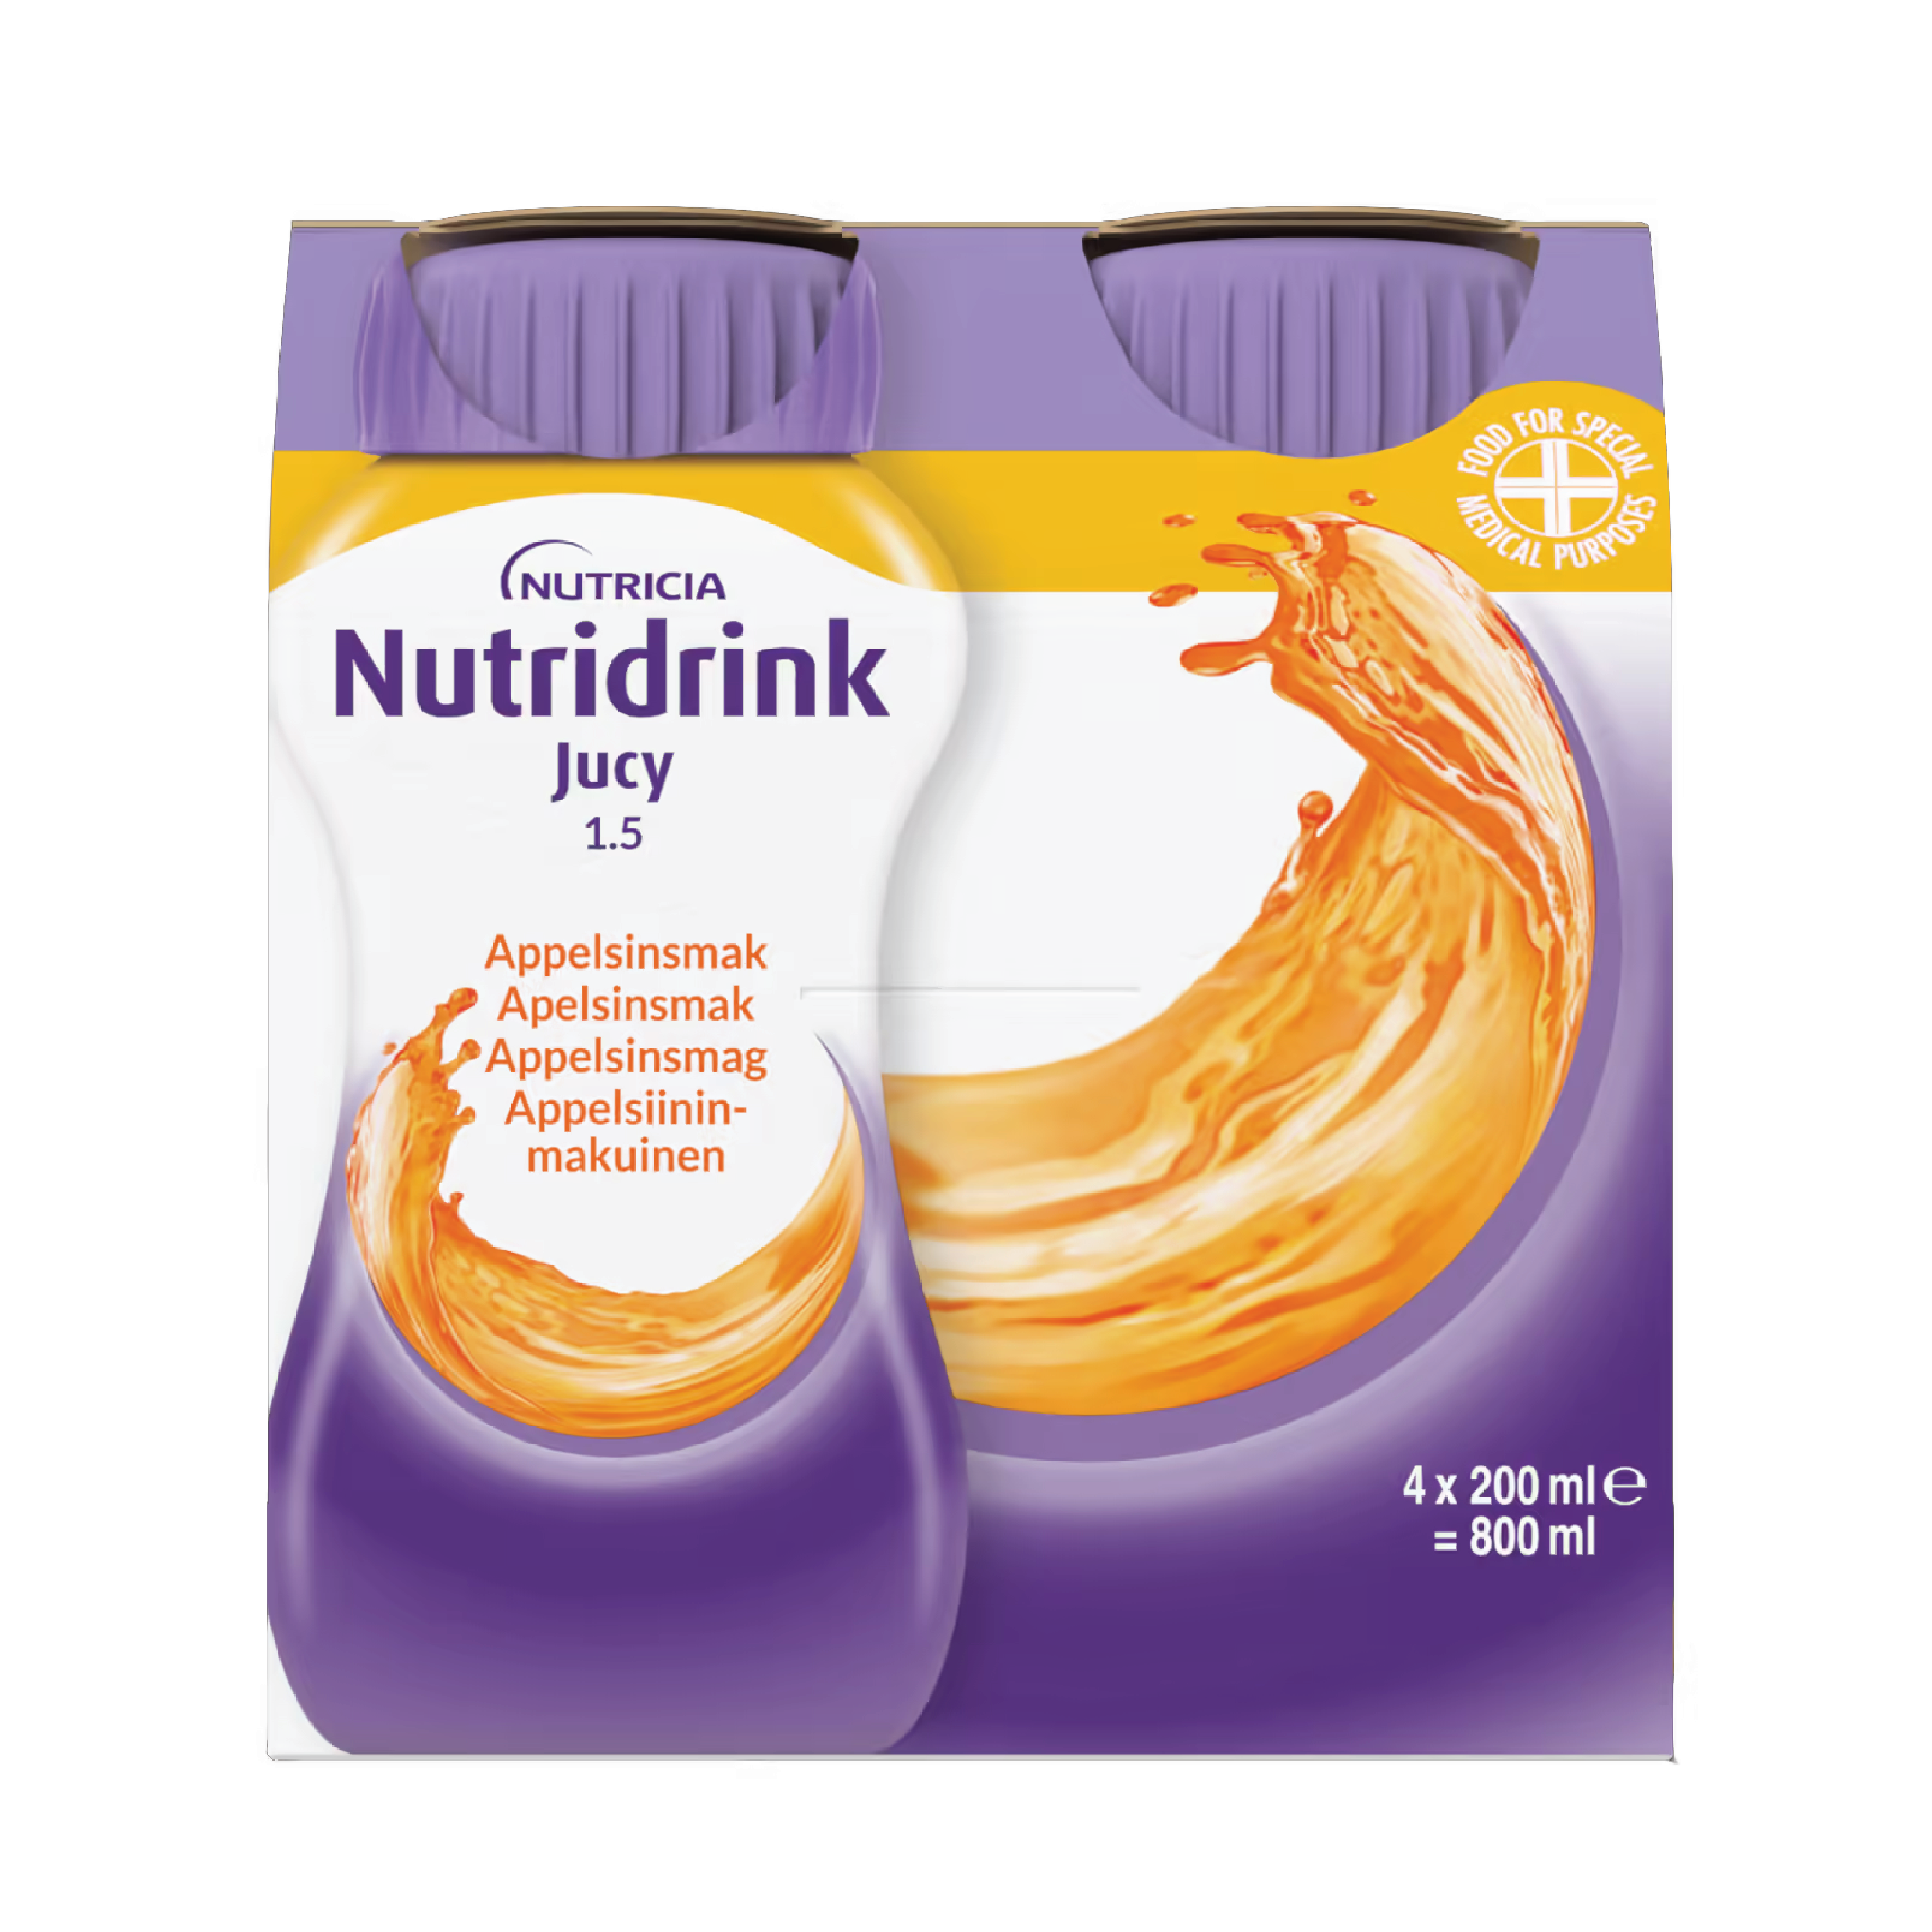 Nutridrink Jucy Næringsdrikk, Appelsin, 4x200 ml